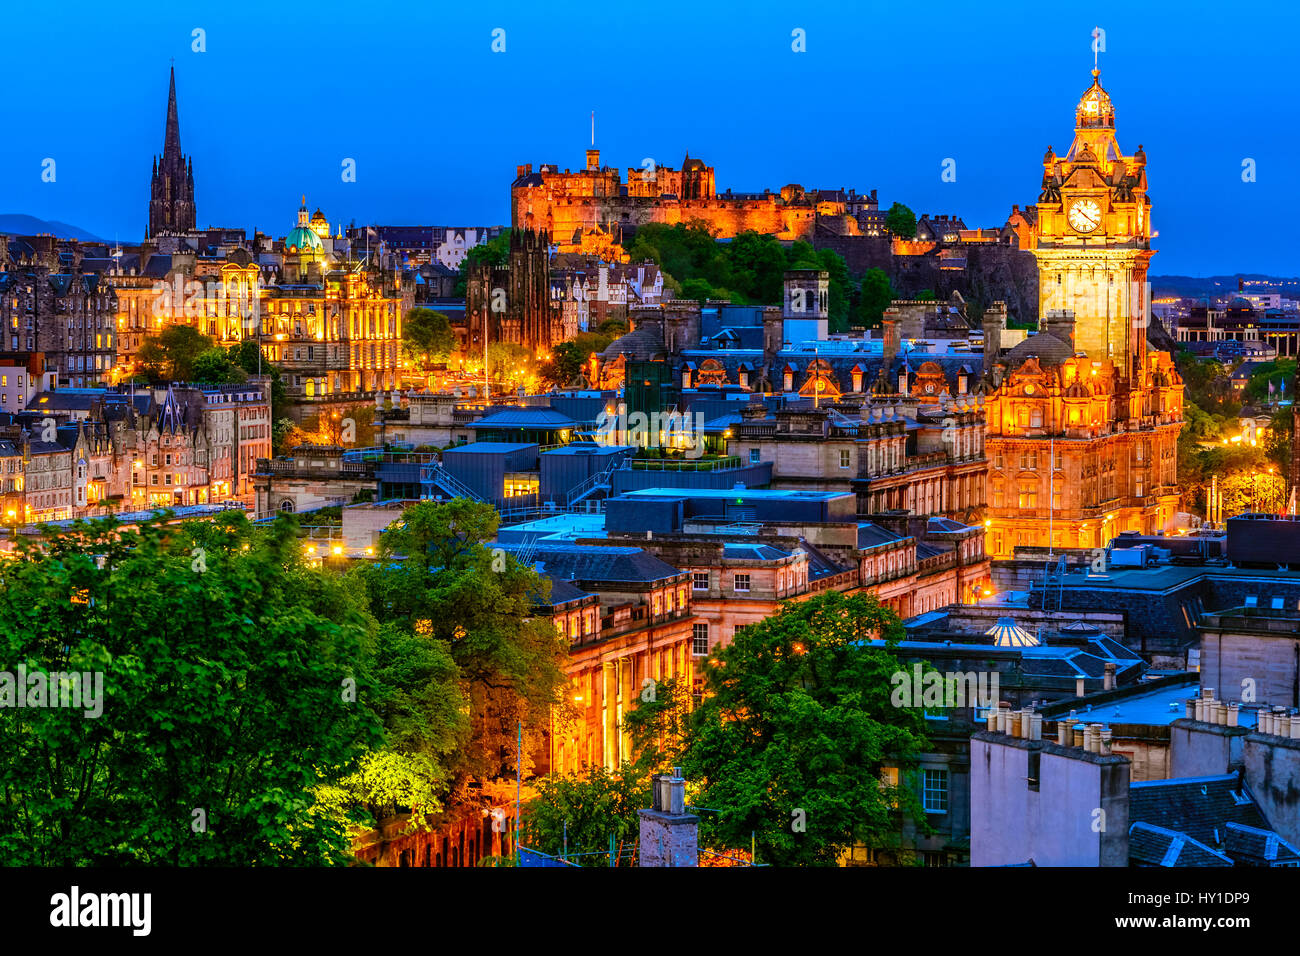 Edinburgh cityscape in the evening, Scotland Stock Photo